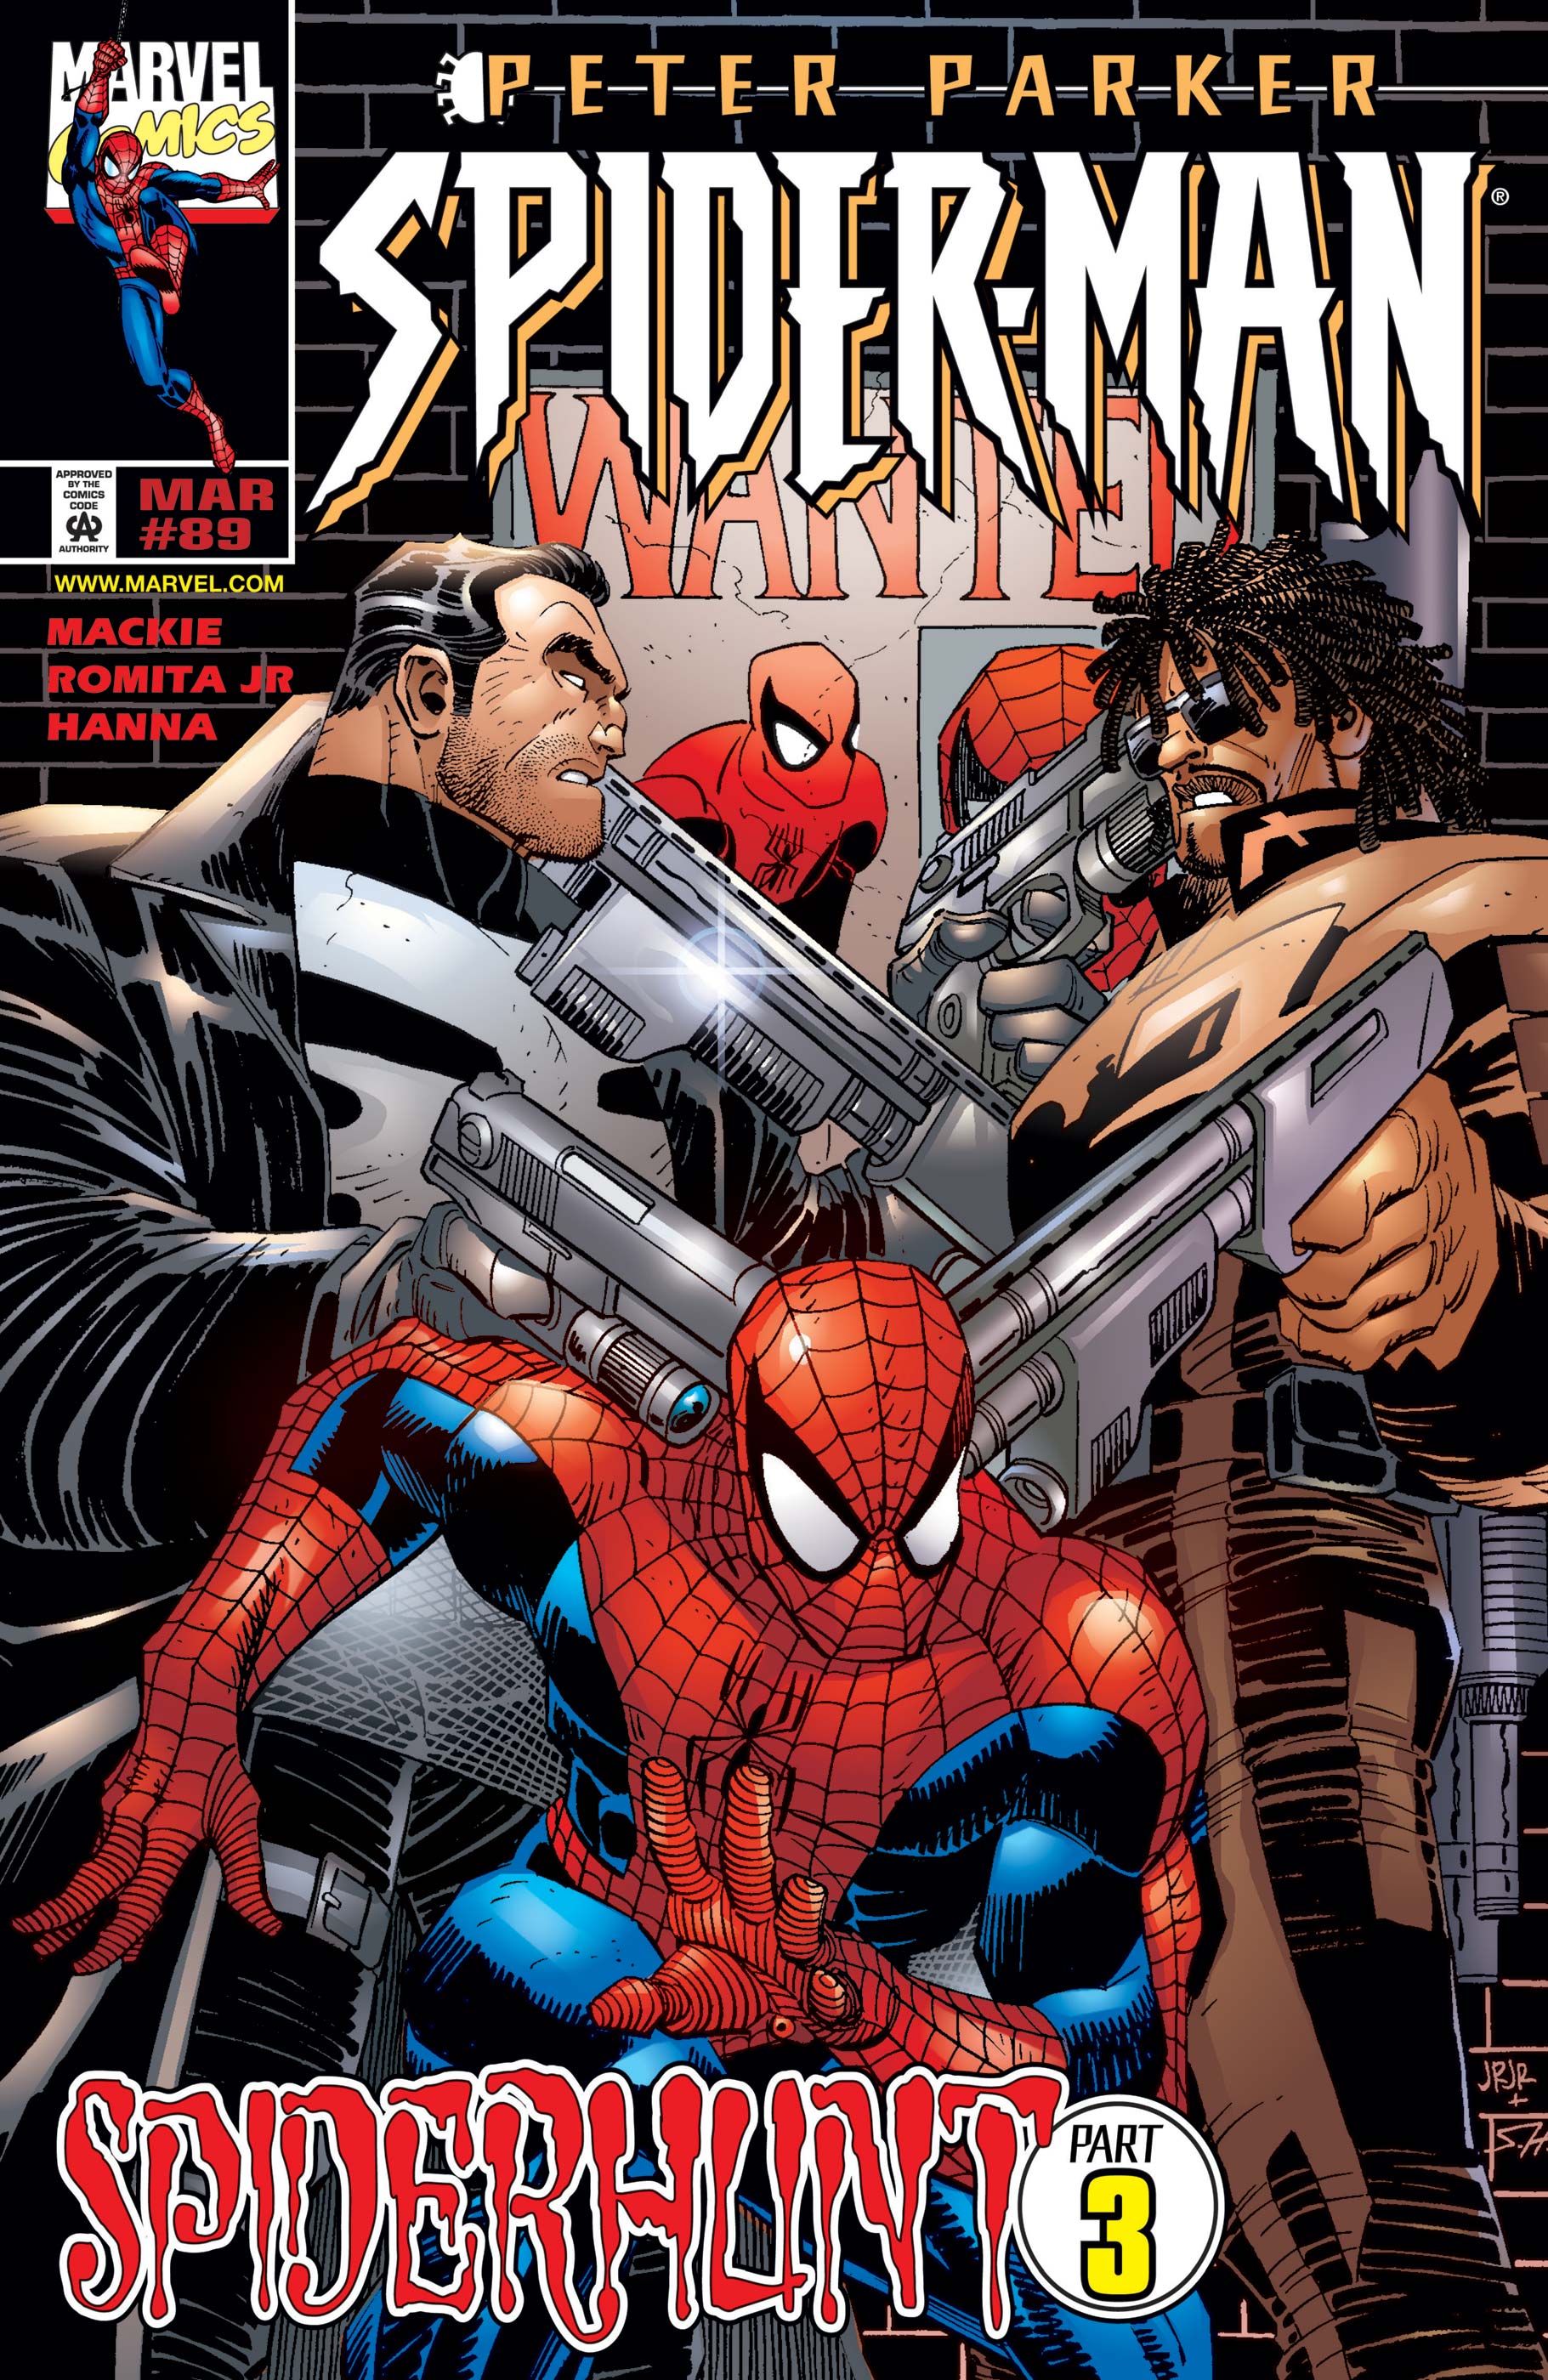 Spider-Man (1990) #89